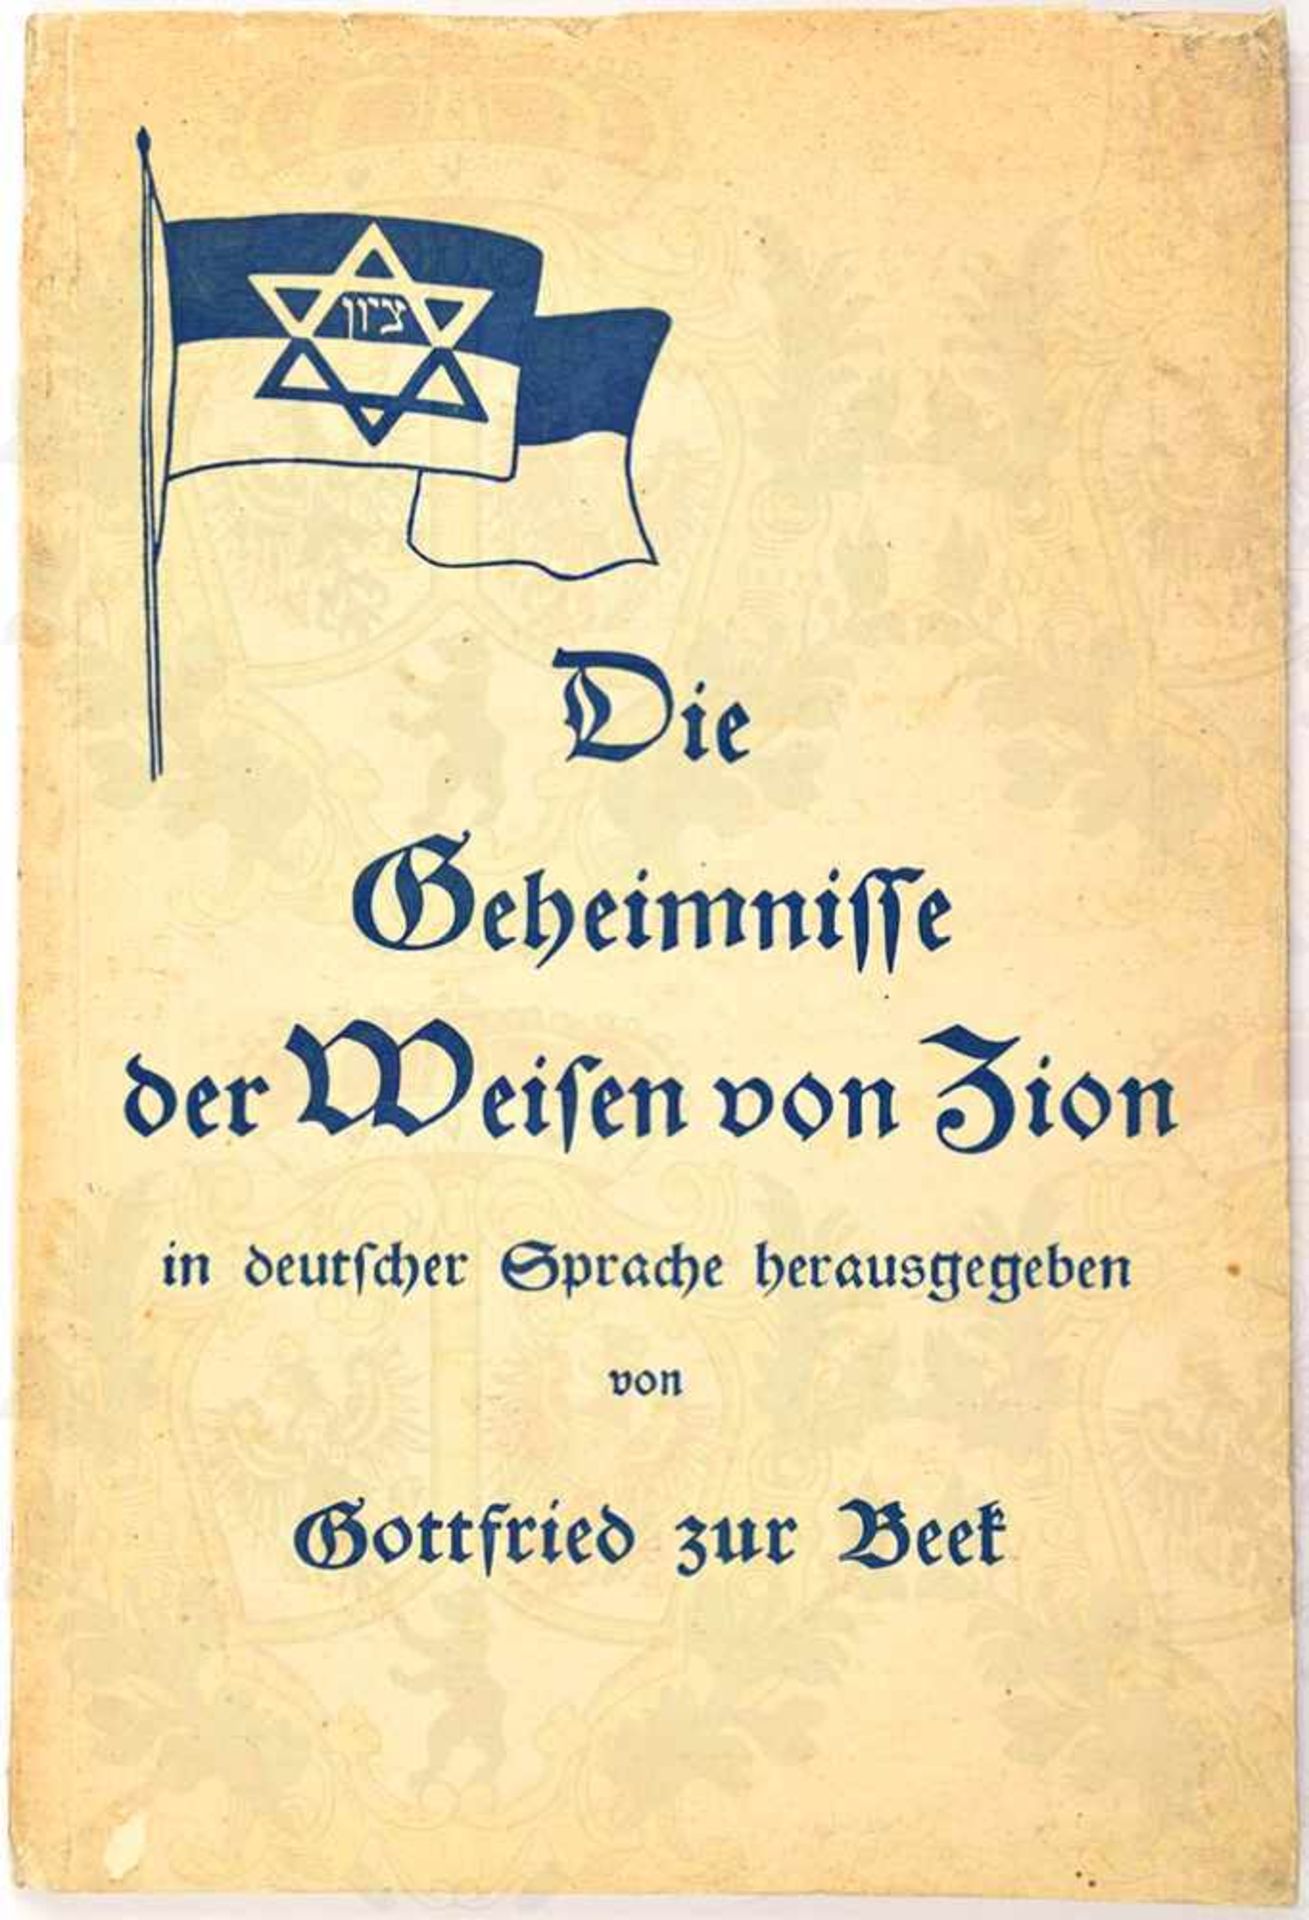 DIE GEHEIMNISSE DER WEISEN VON ZION, Gottfried zur Beek, Eher Verlag, München 1933, 72 S., kart,